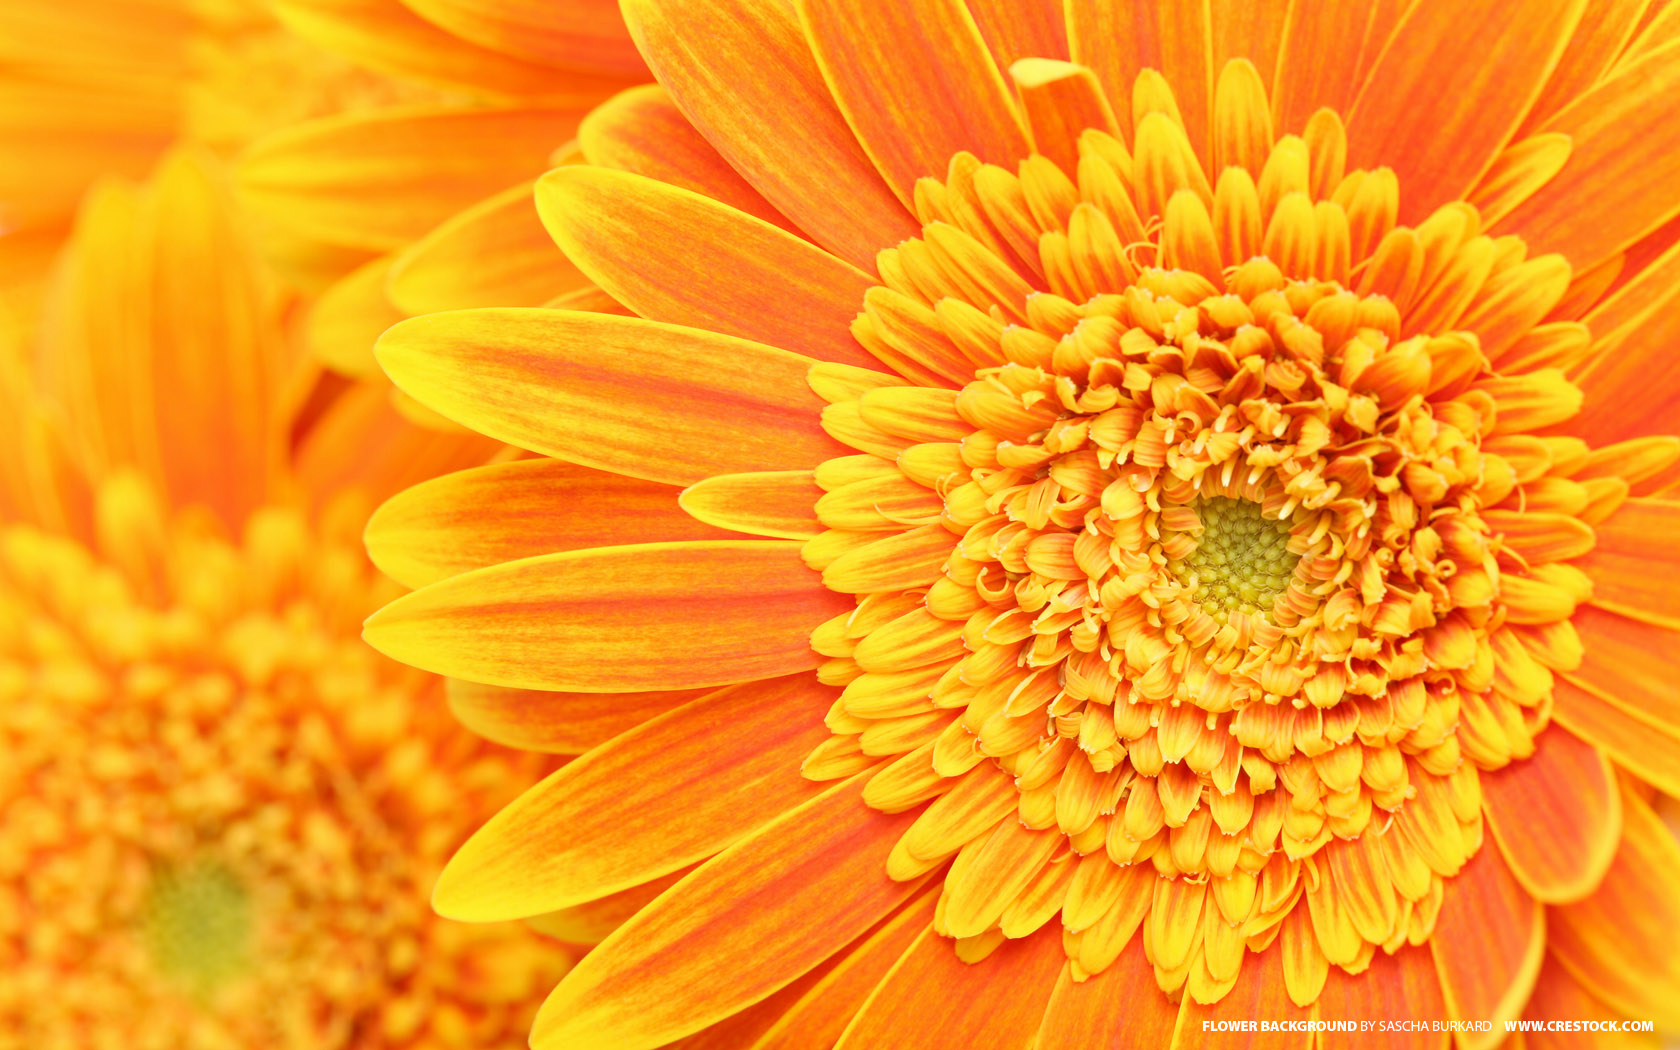 Orange Flower Background - High Resolution Flower Textures - HD Wallpaper 